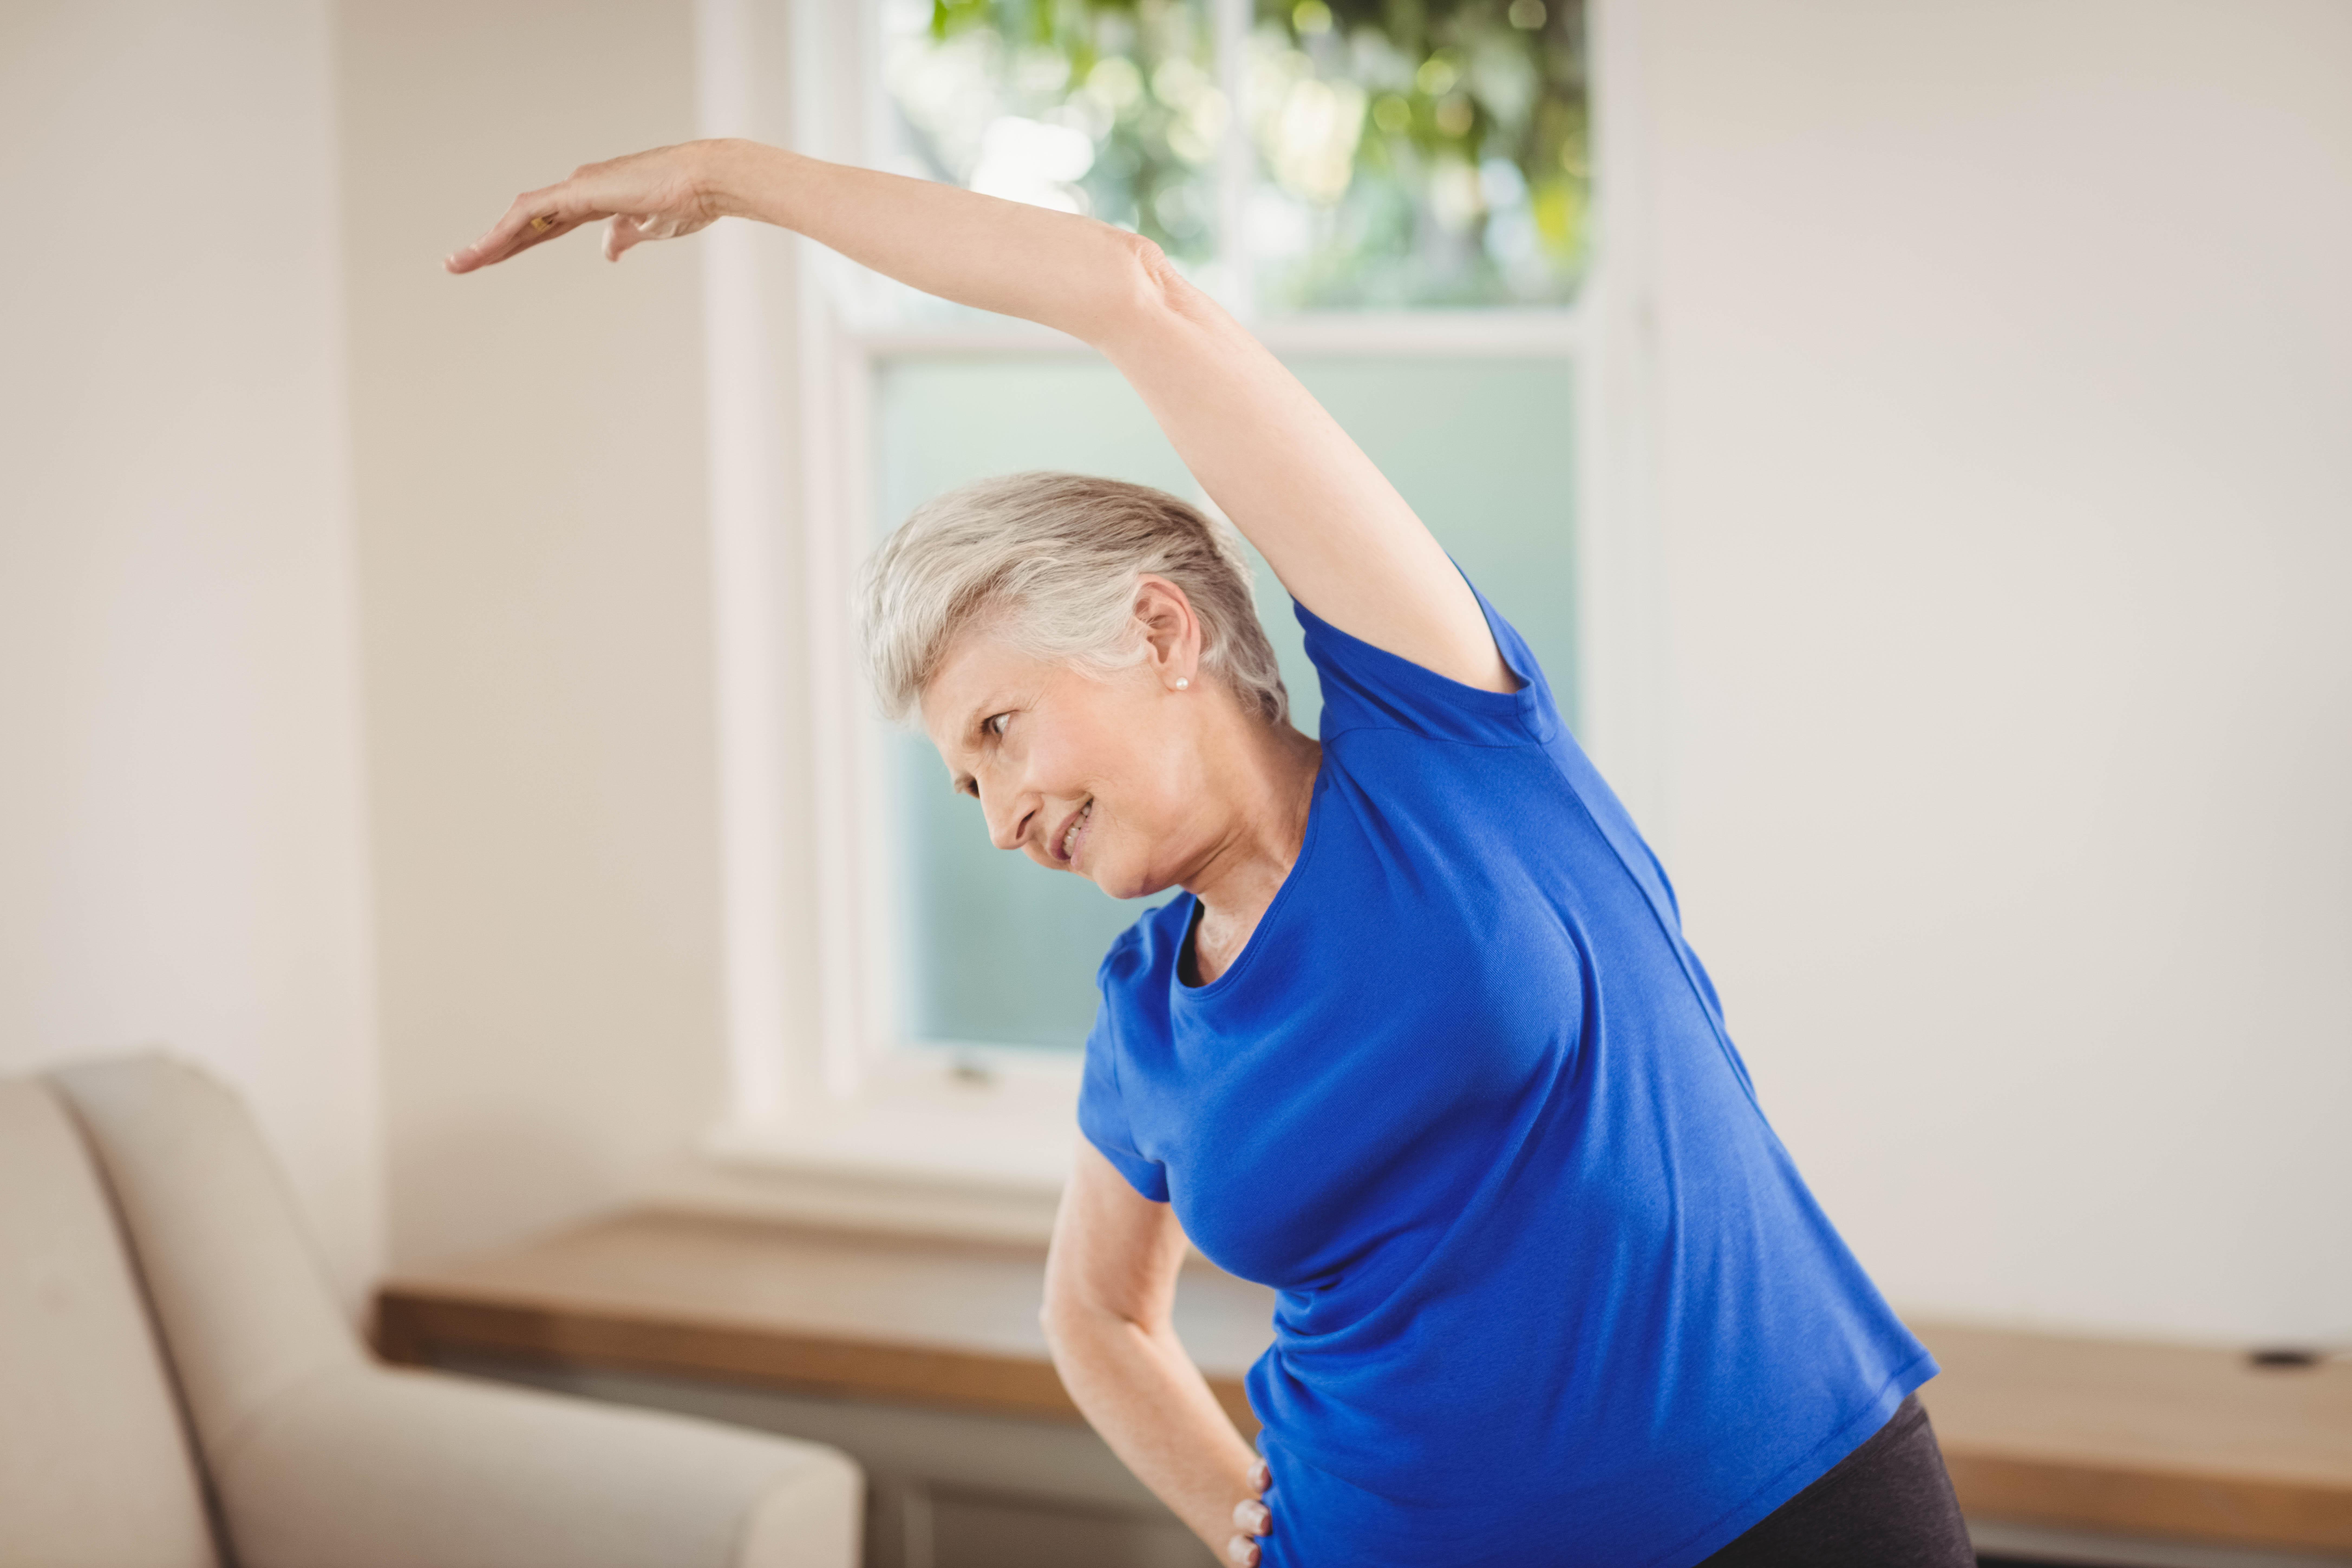 Yoga: Yoga Poses For Better Flexibility In Elderly